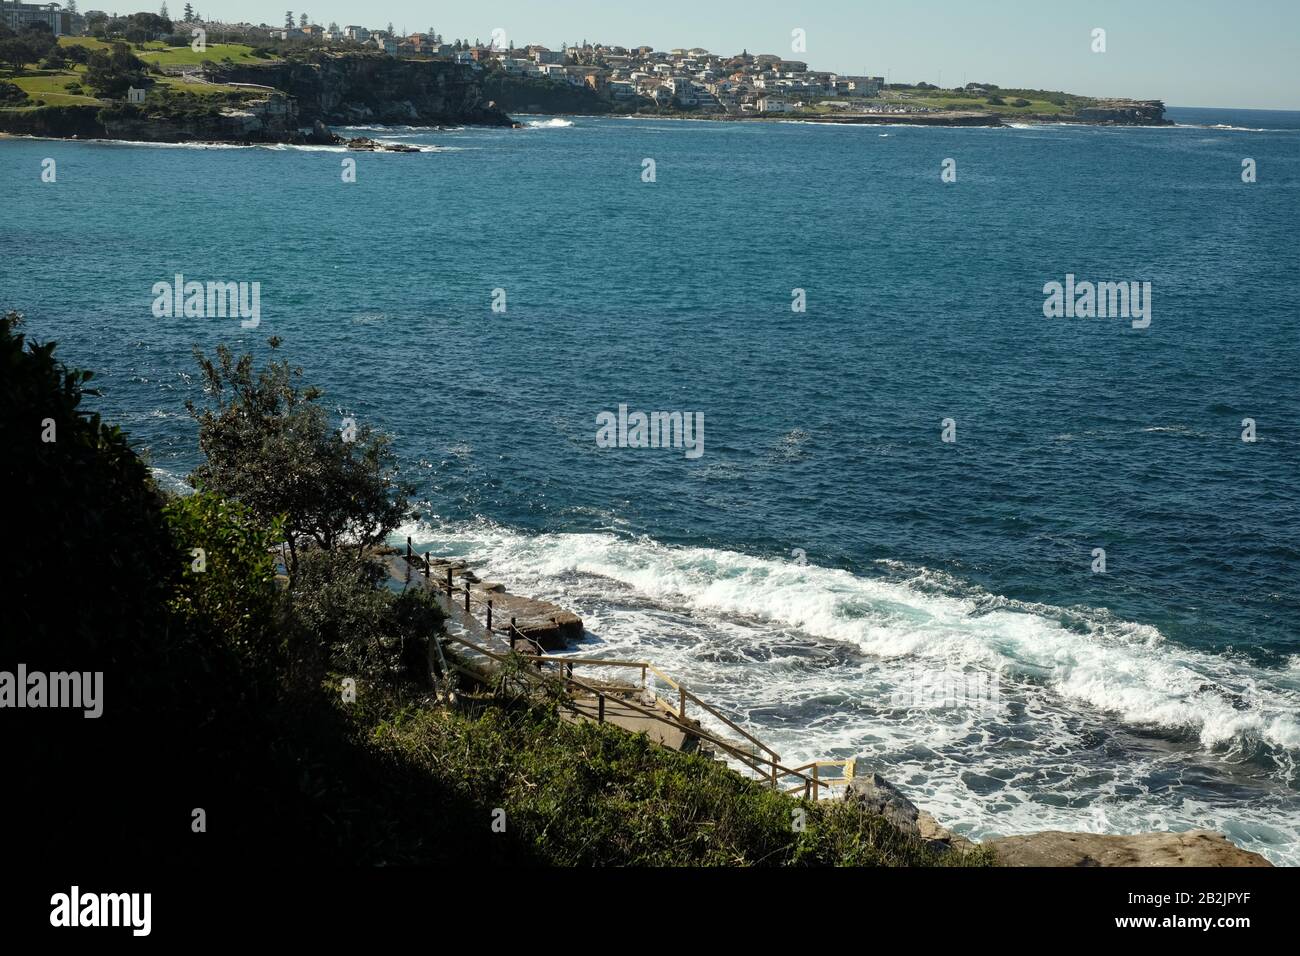 Con vistas a la piscina de mujeres McIver's, árboles y arbustos, la bahía de Coogee hasta Bondi, un paisaje costero de Sydney Foto de stock